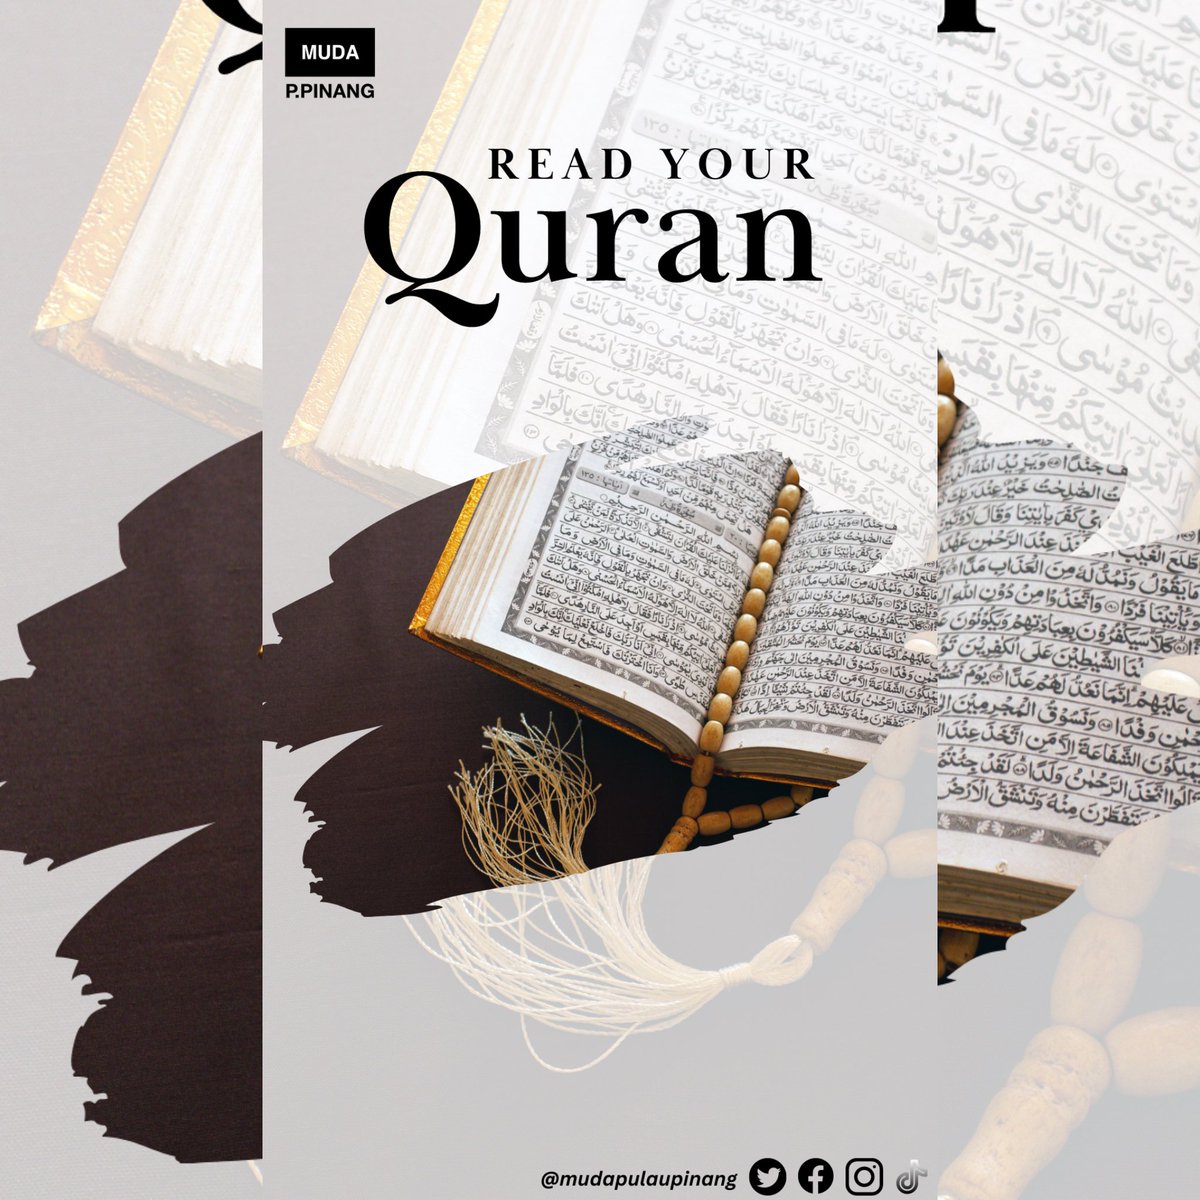 Selamat menyambut Nuzul al-Quran 1445H kepada seluruh umat Islam di Malaysia. Ayuh kita memperbanyakkan bacaan al-Quran dan menyelami maksudnya agar dapat menjadi teladan sepanjang zaman. Ikhlas daripada, Parti MUDA Pulau Pinang.